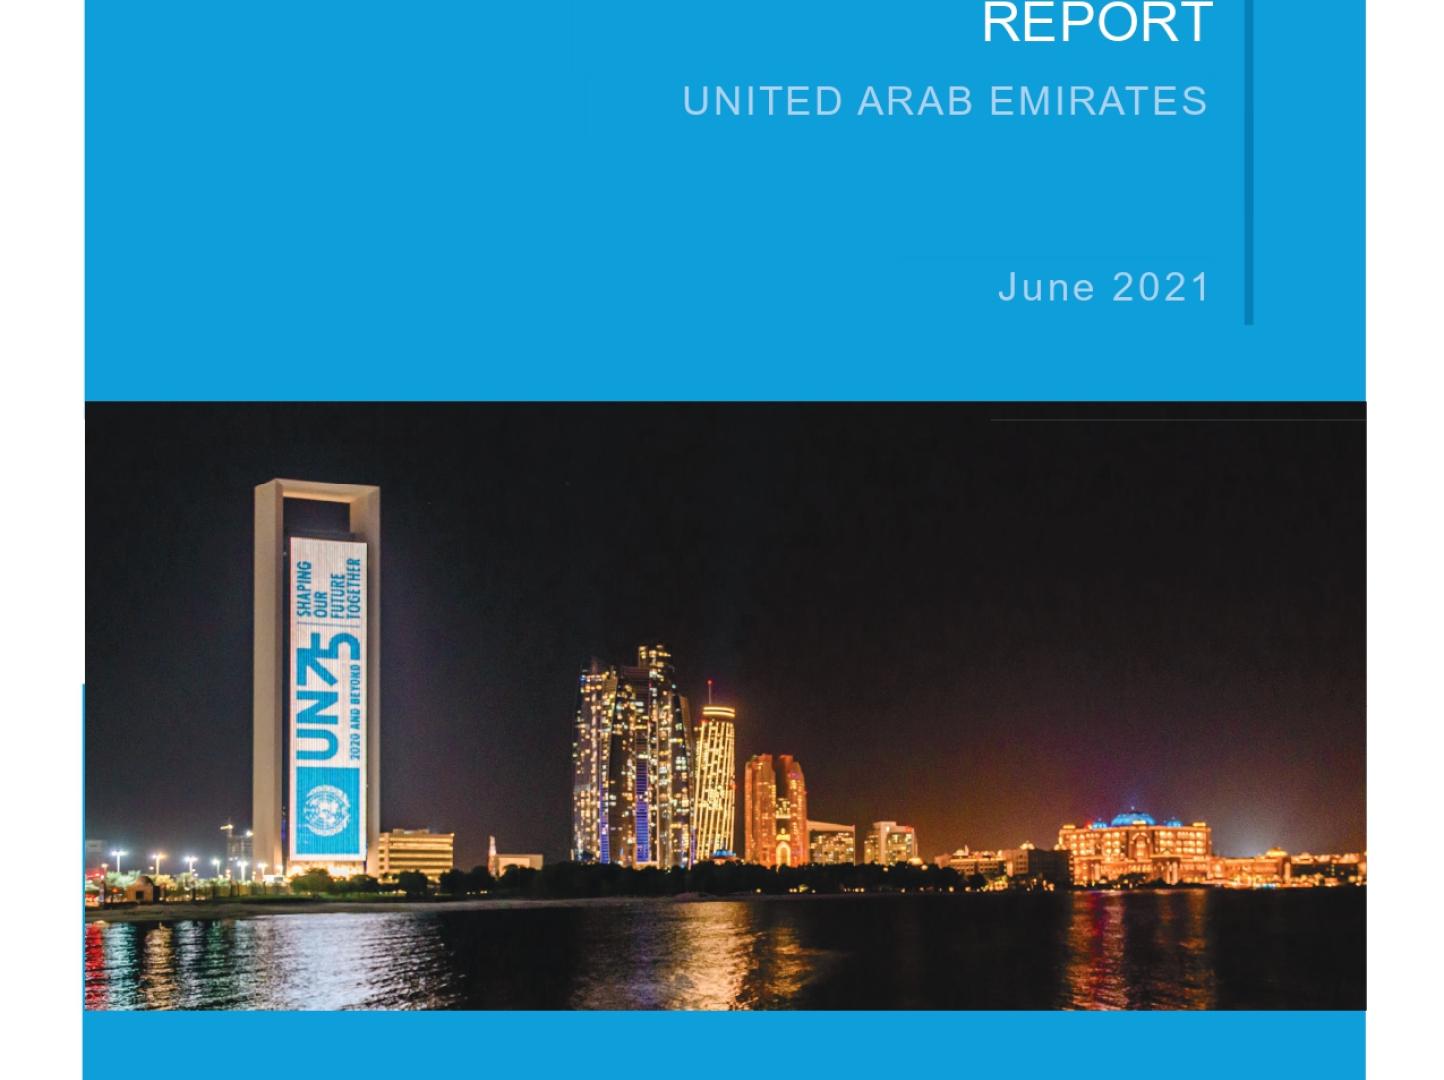 2020 UAE UN Annual Results Report 